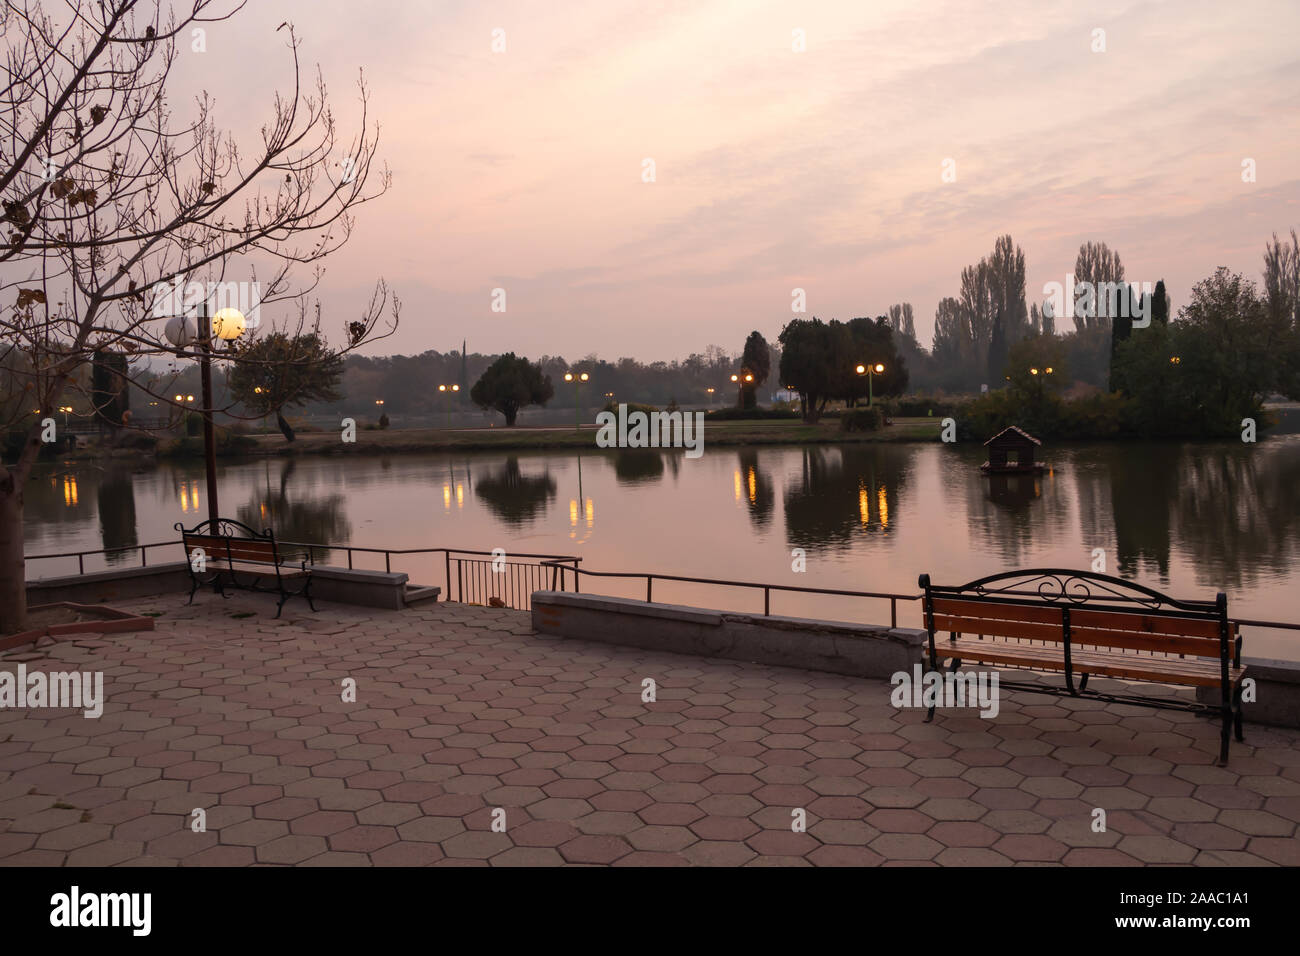 Stara Zagora, Bulgarien - Oktober 30, 2019: Blick über den See Zagorka am frühen Morgen. Stockfoto